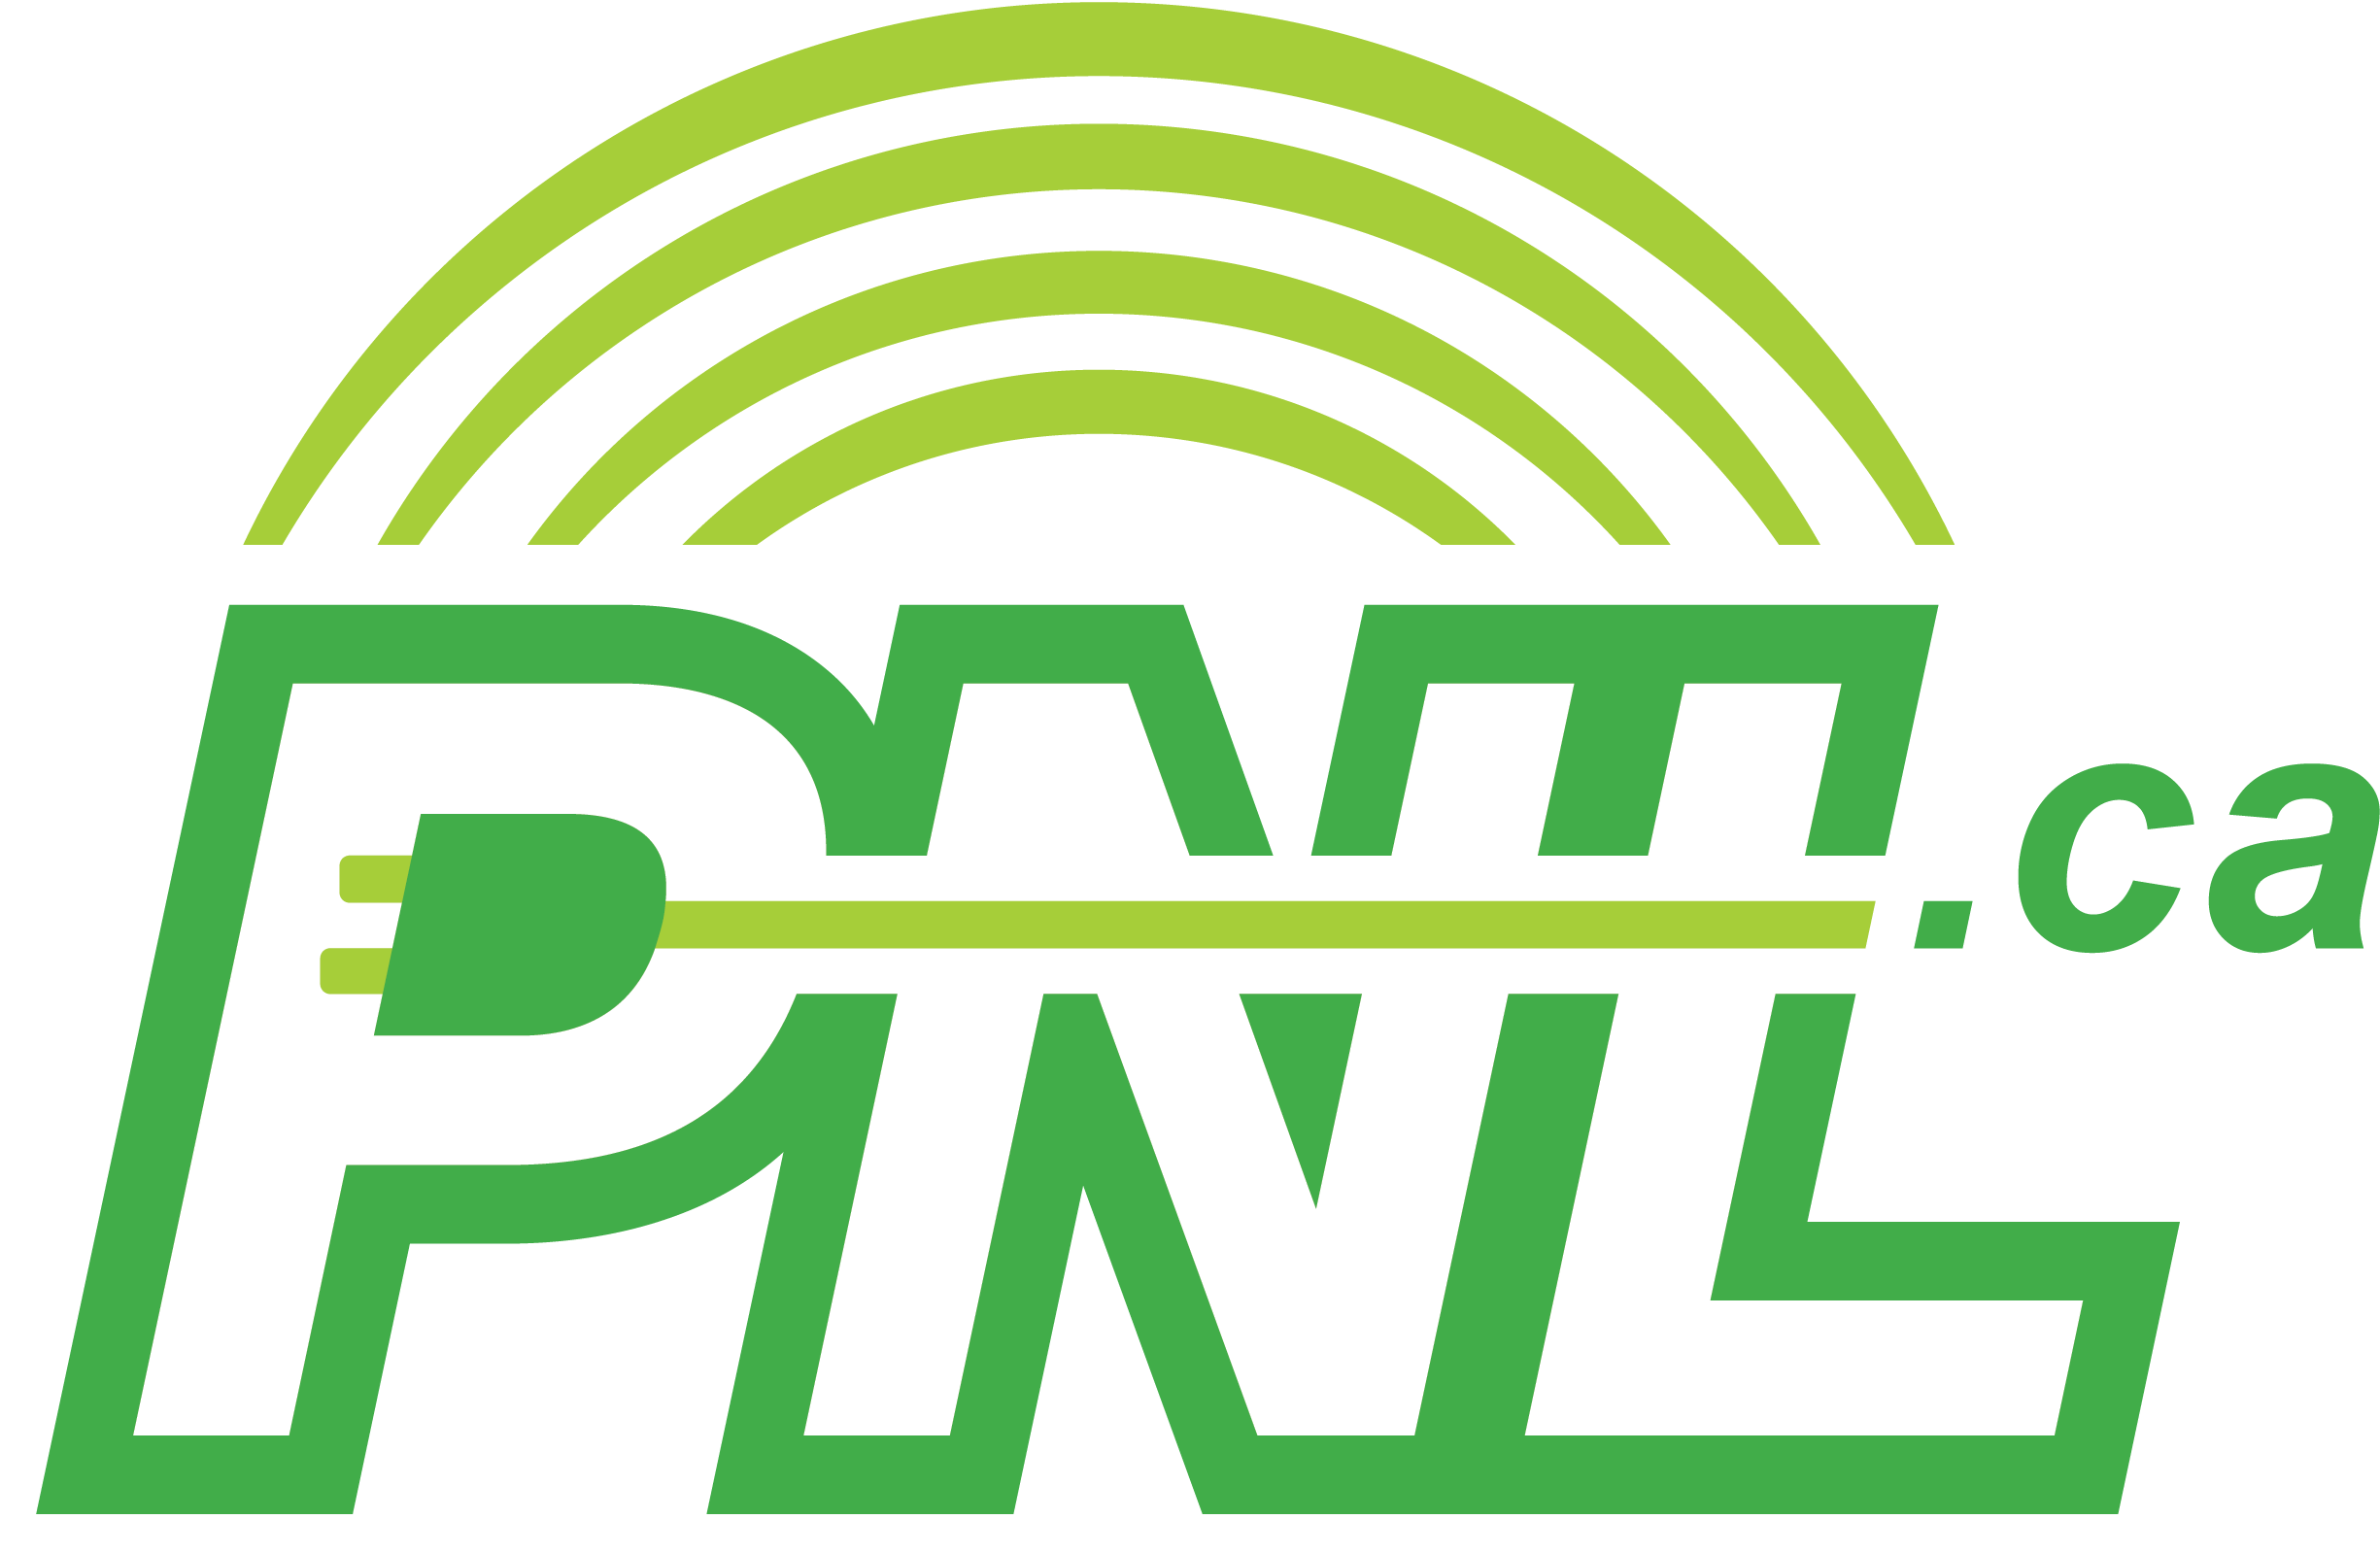 PNL Communications Ltd